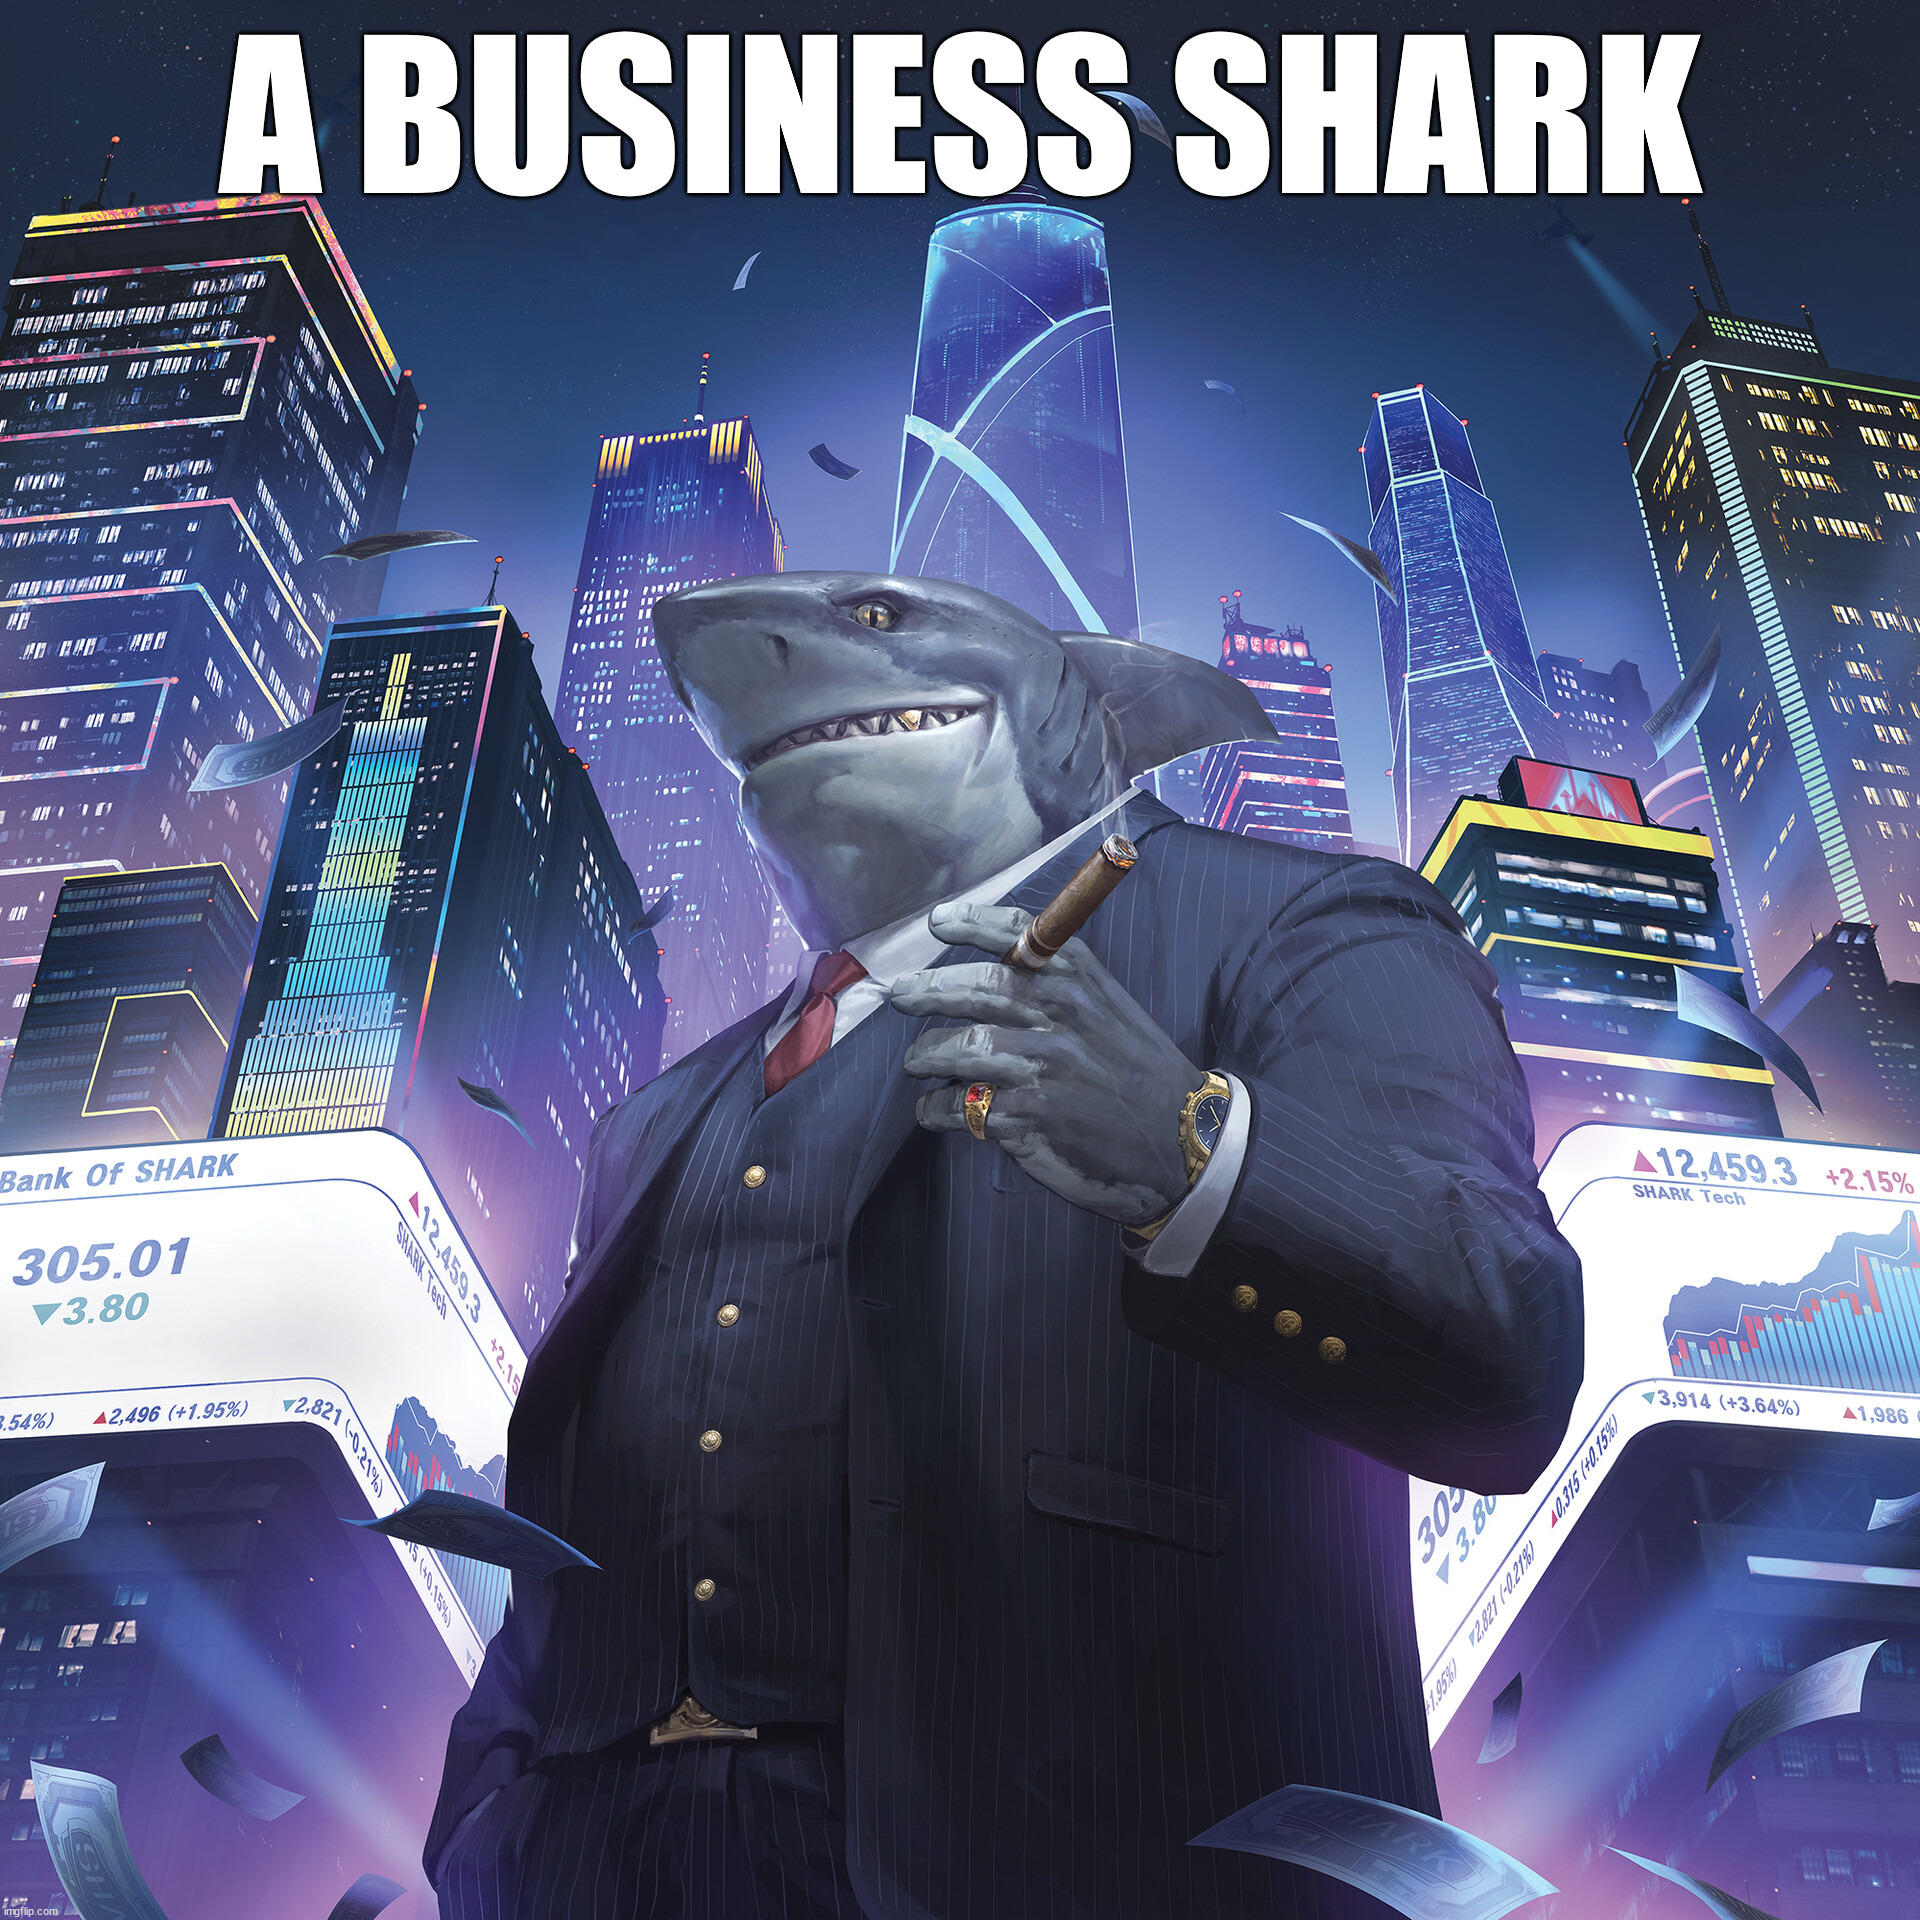 A BUSINESS SHARK | made w/ Imgflip meme maker